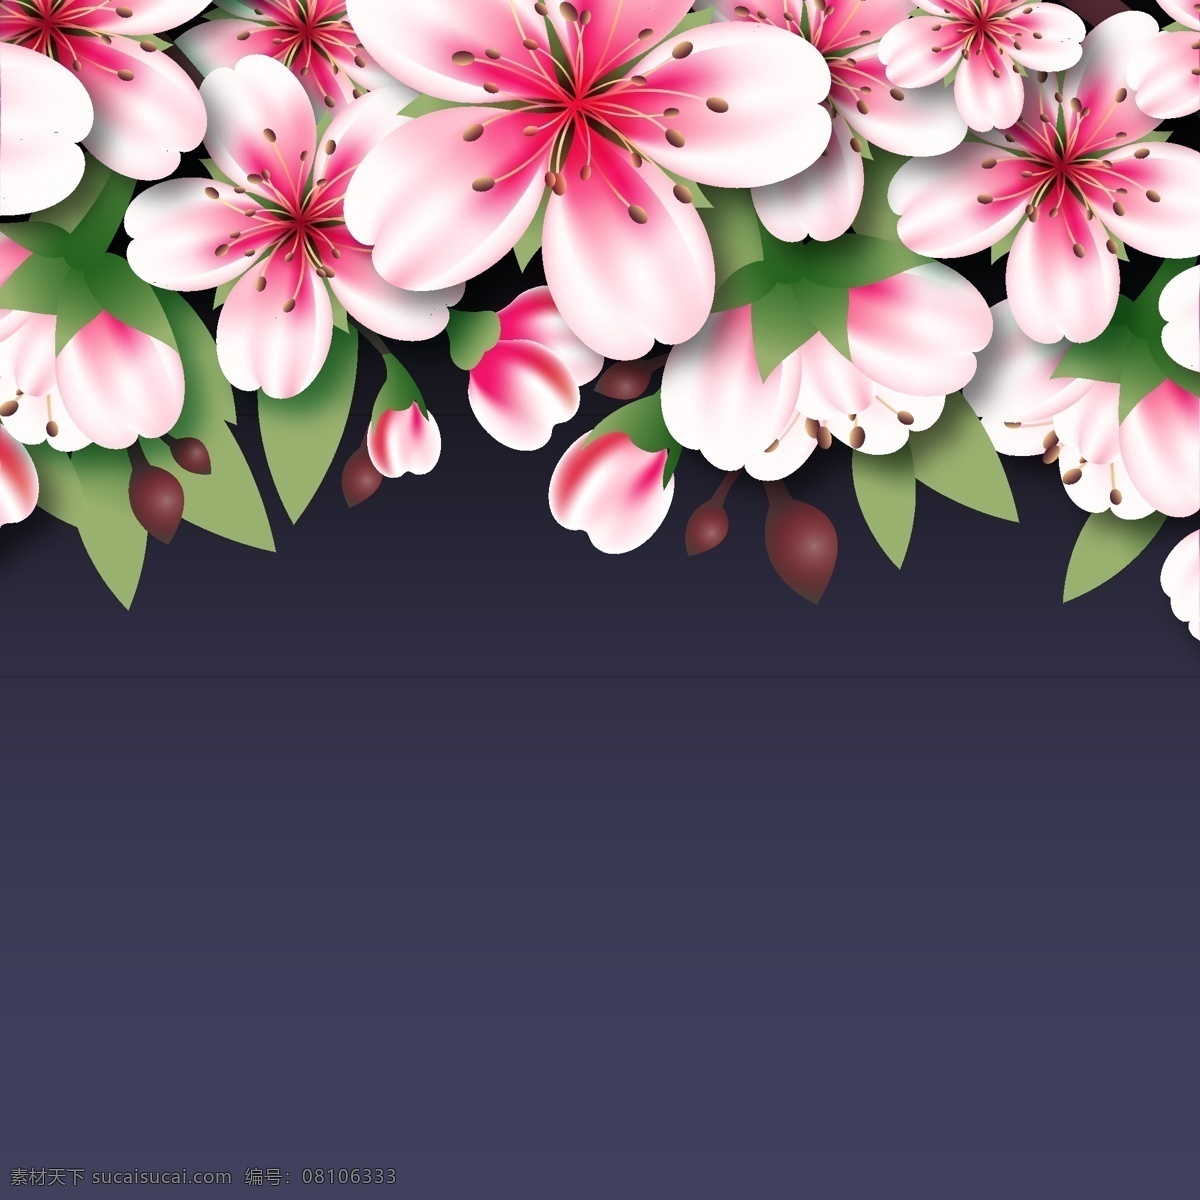 美丽 粉色 桃花 花卉 矢量图 格式 矢量 高清图片